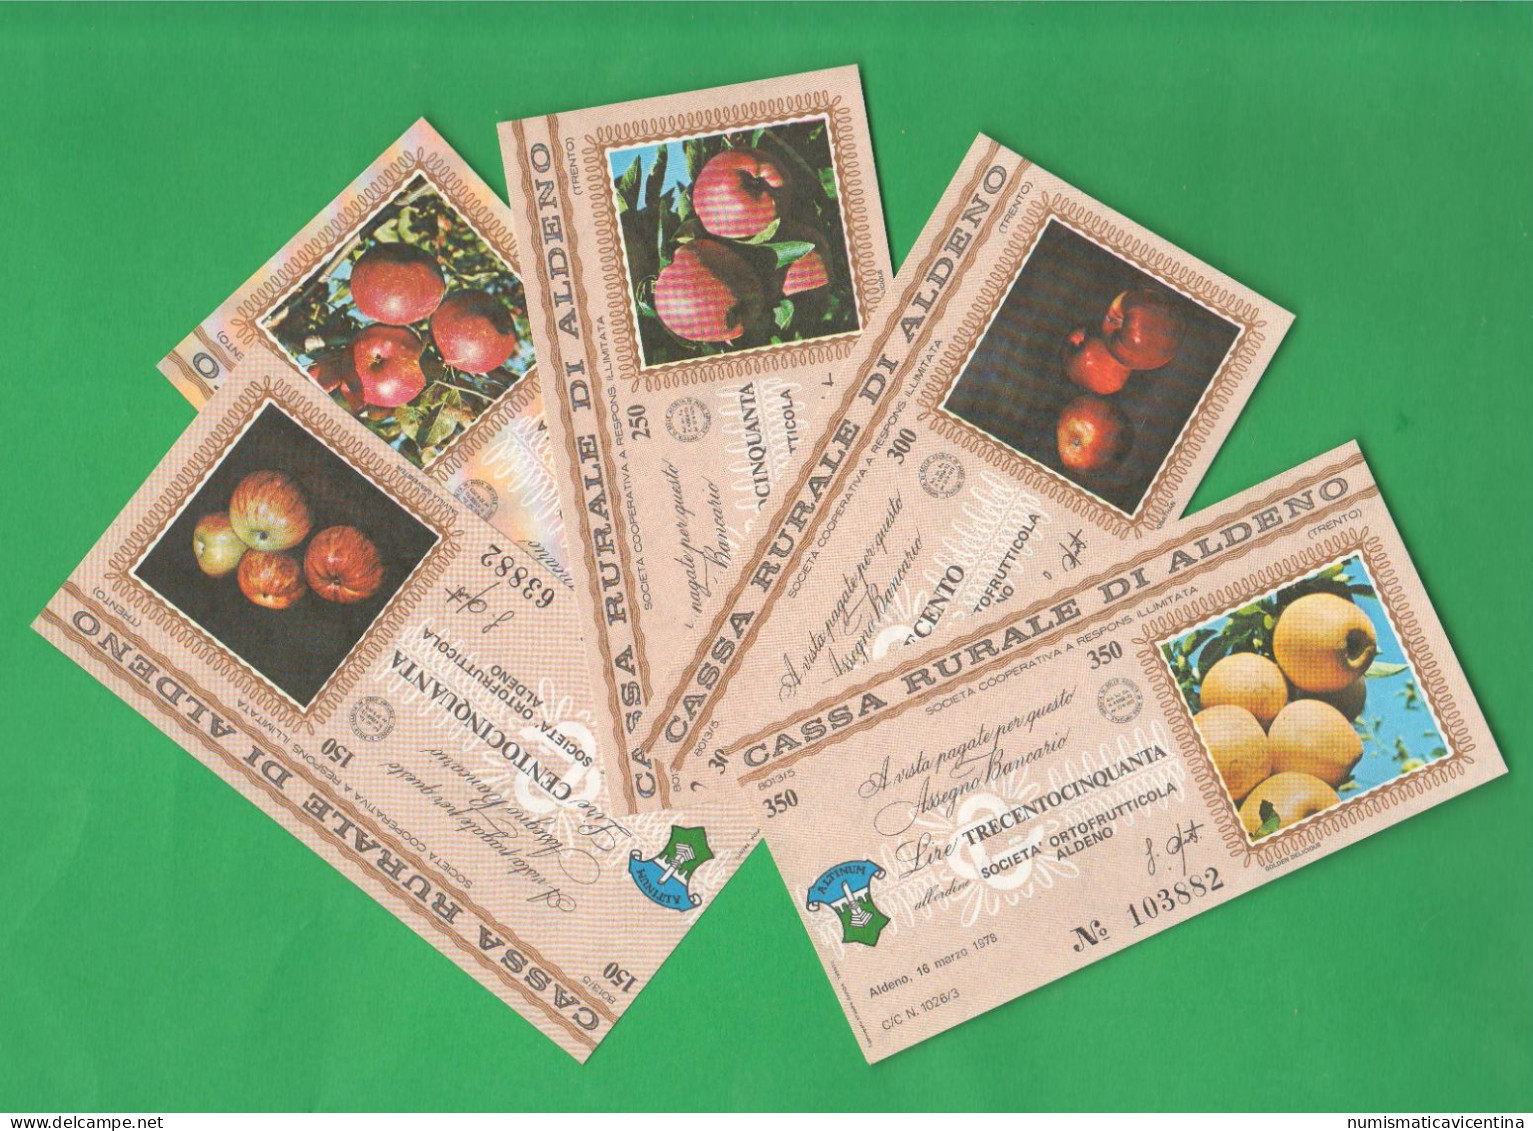 Trento Aldeno Cassa Rurale 5 Miniassegni 1978 Da 150 200 250 300 350 Lire Mele Apples Pommes - [10] Cheques Y Mini-cheques